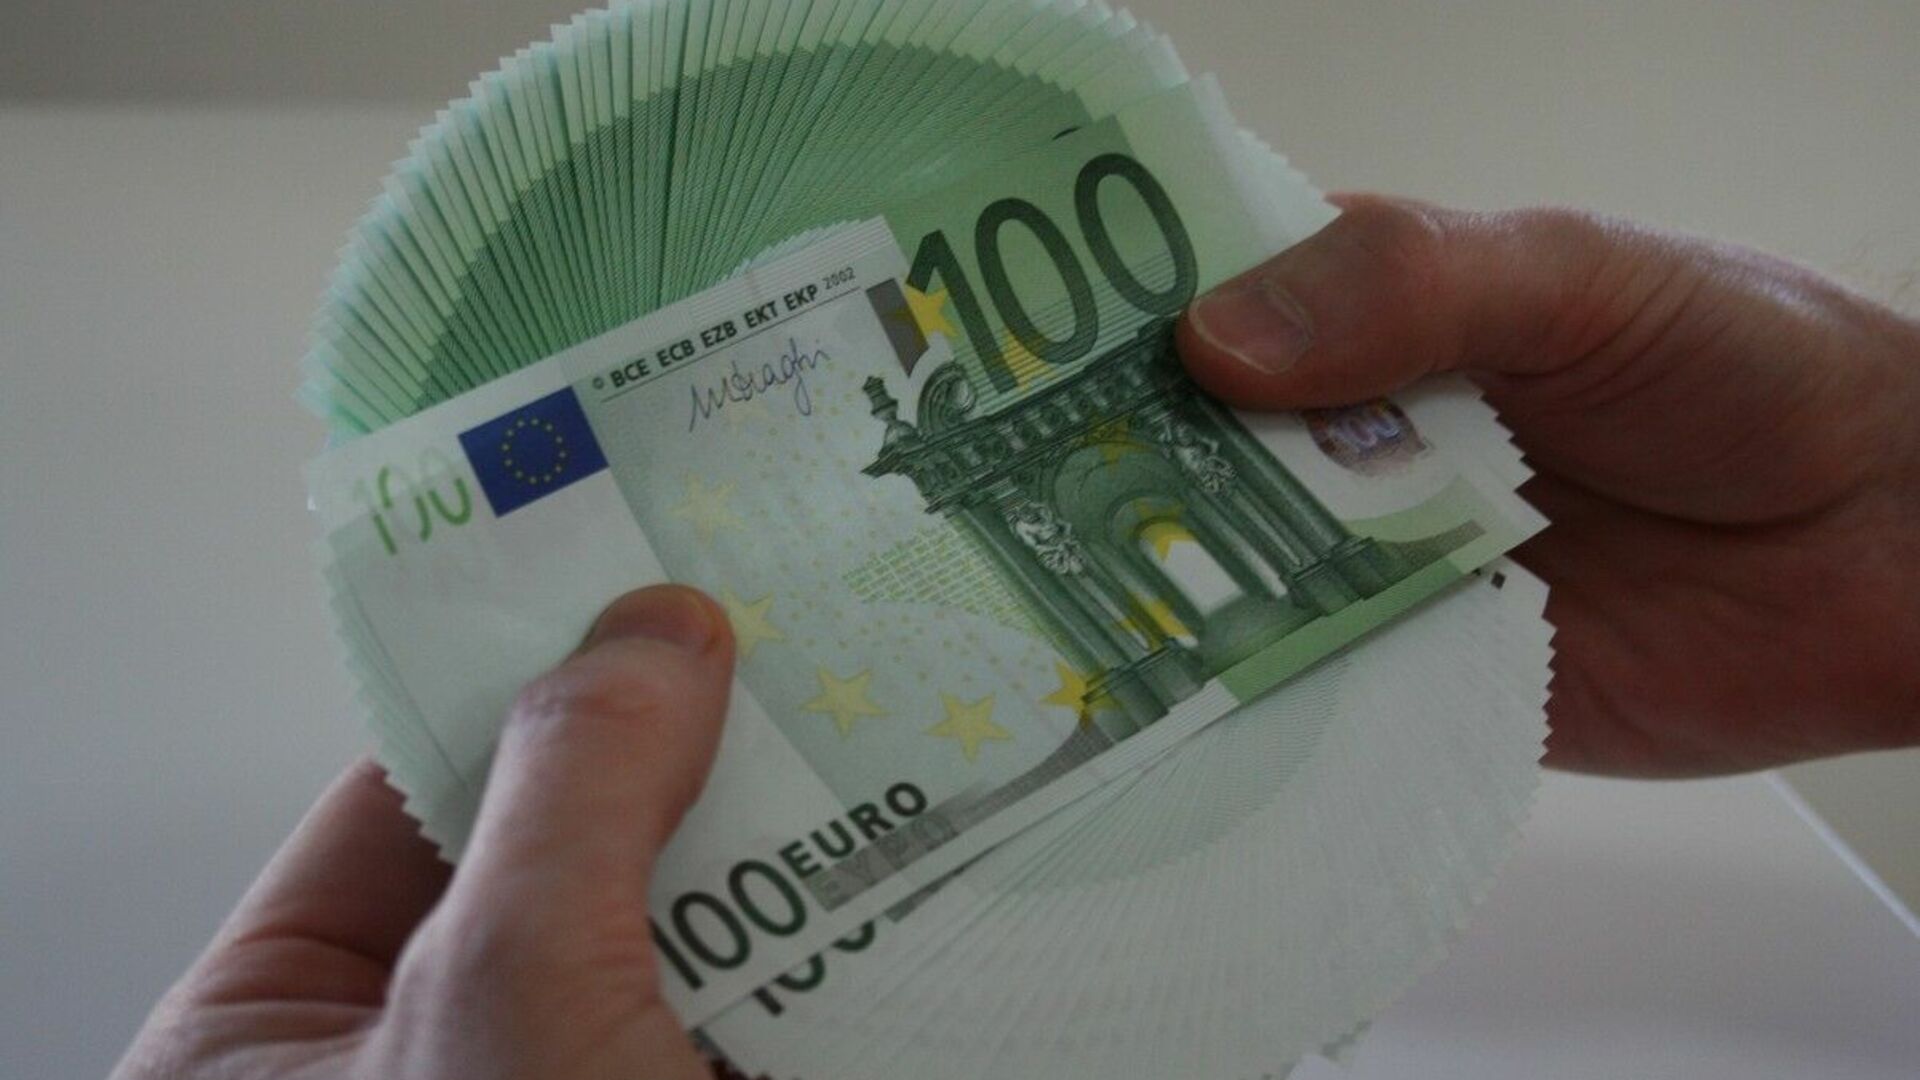 Миллион евро в рублях на сегодня. 5000 Евро. Тыща евро. Фото 5000 евро. 5000 Тыс евро.